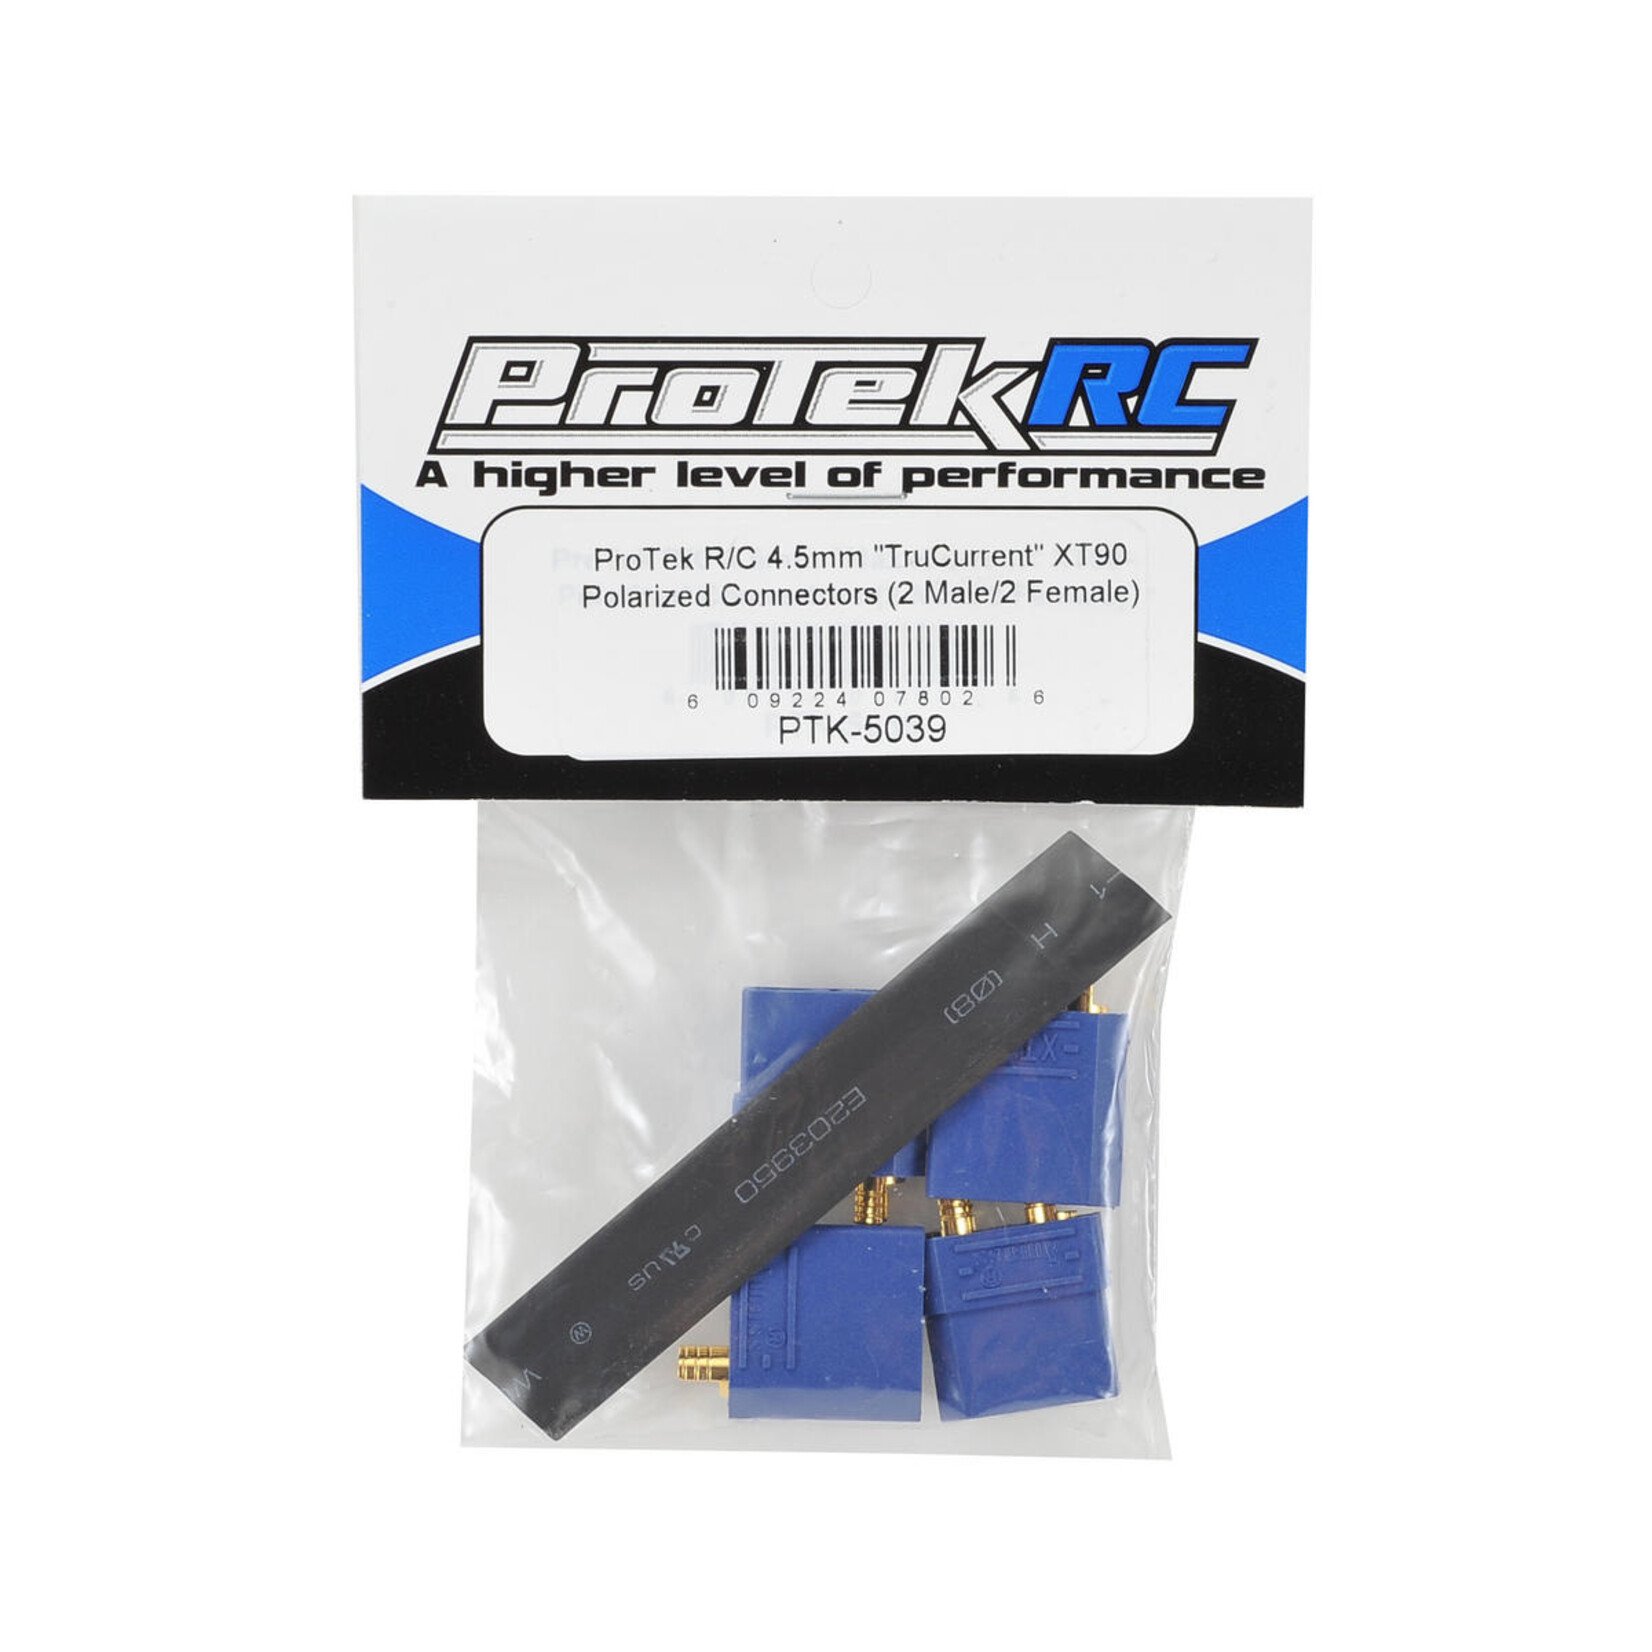 ProTek RC ProTek RC 4.5mm "TruCurrent" XT90 Polarized Connectors (2 Male/2 Female)  #PTK-5039